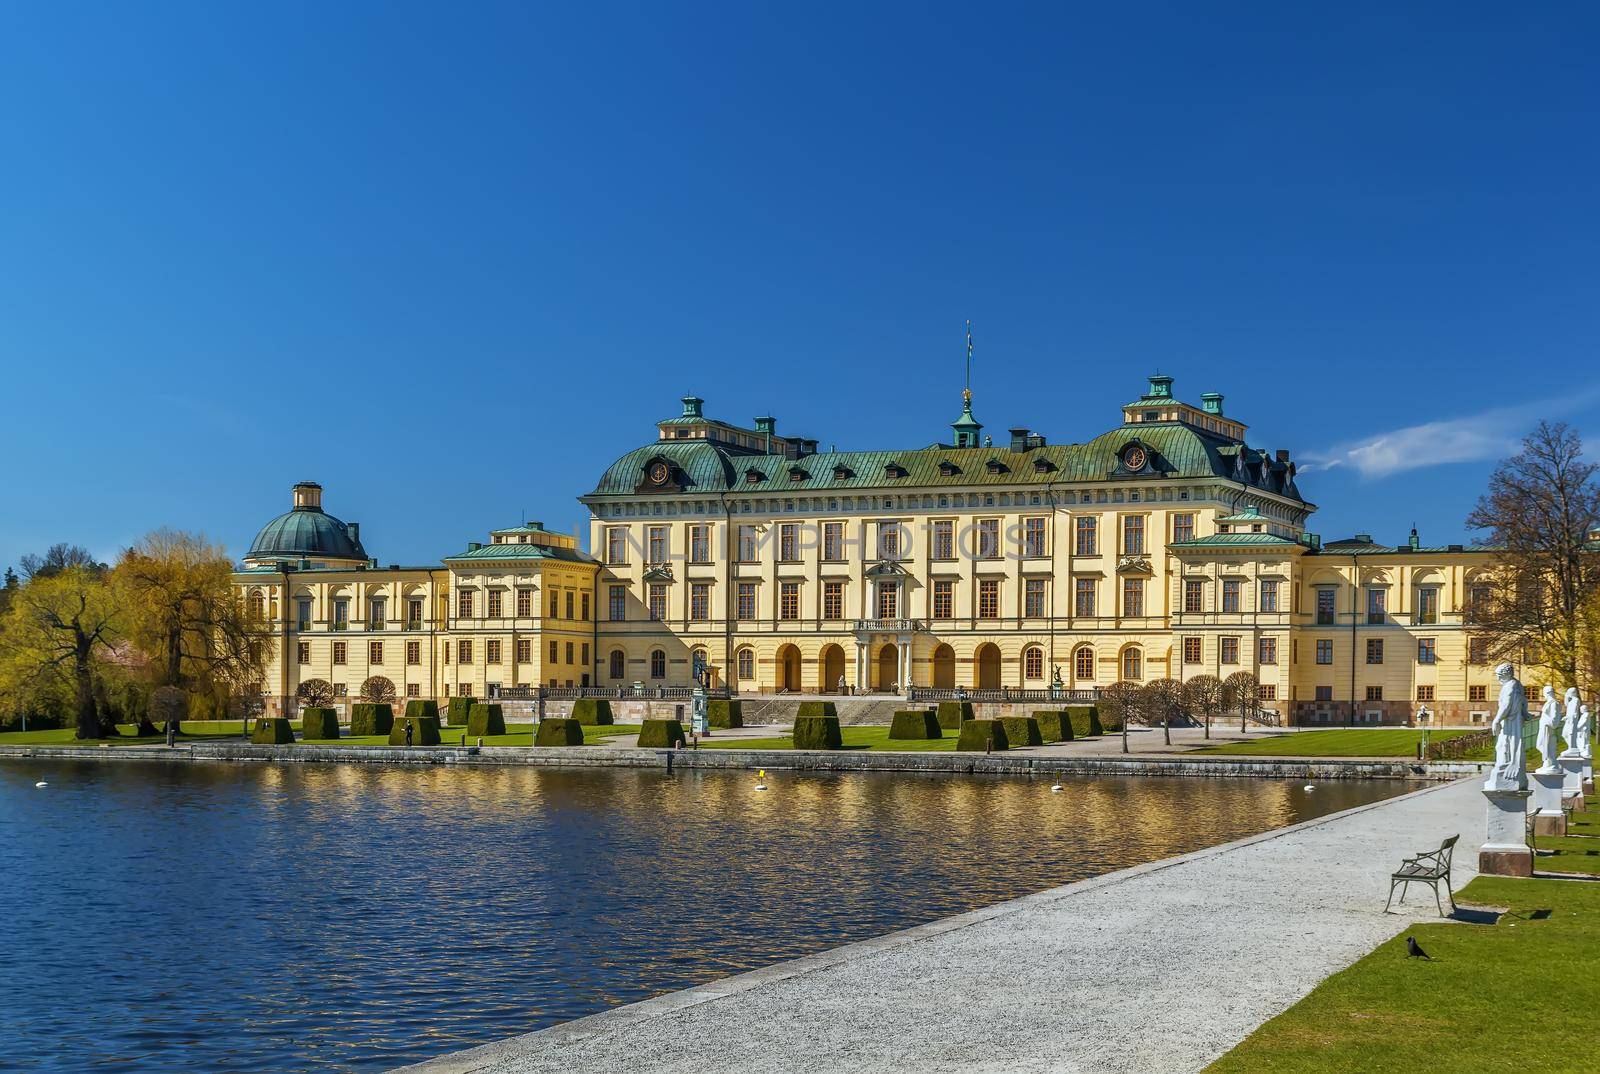 Drottningholm Palace, Stockholm, Sweden by borisb17